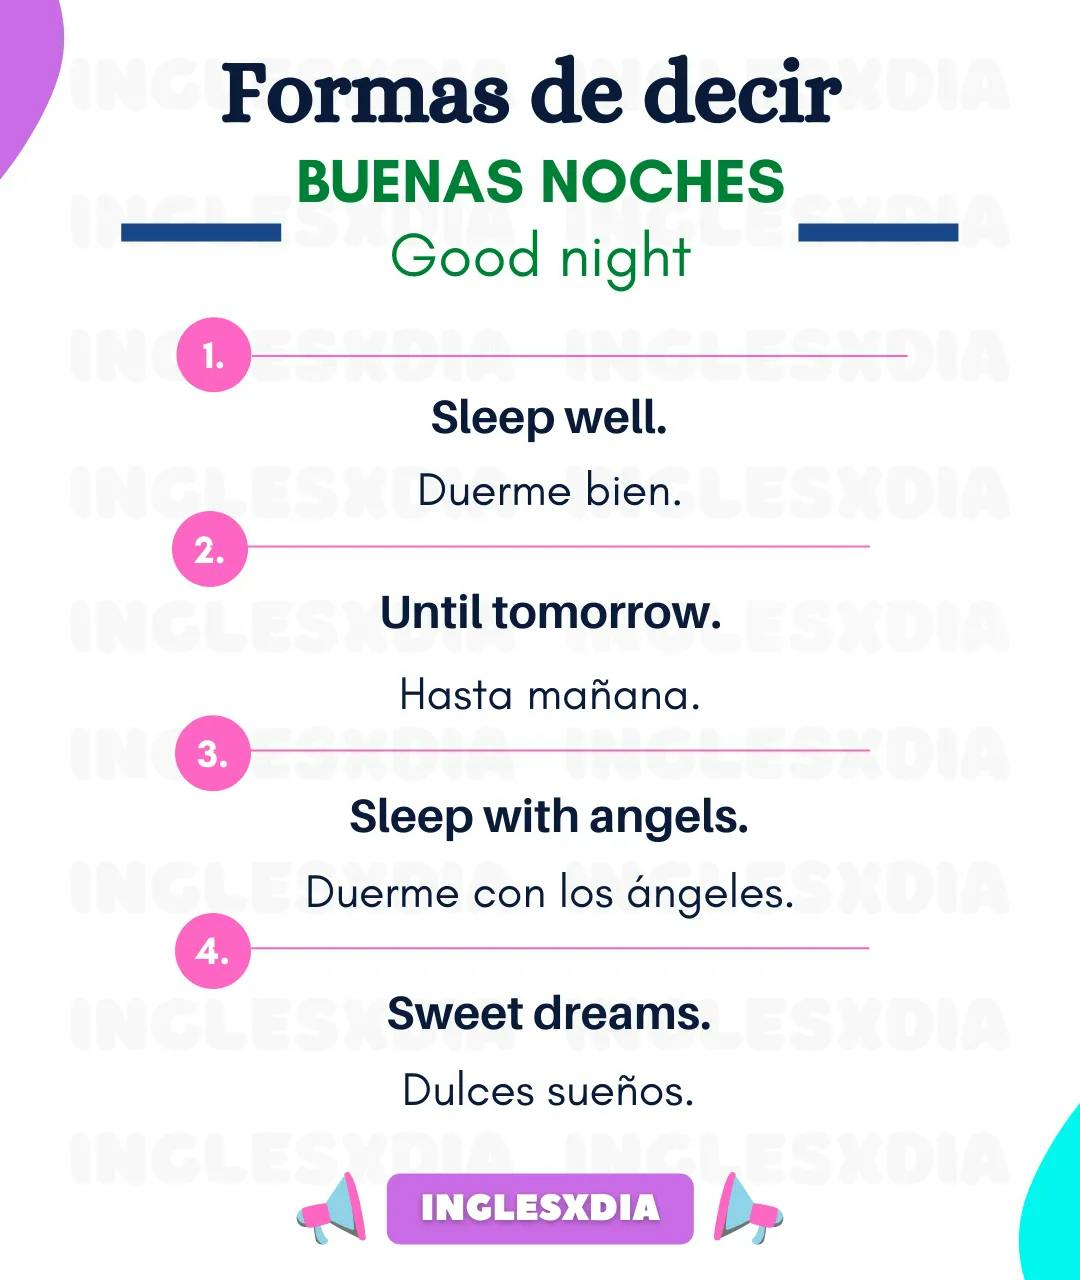 Curso de inglés en línea: formas de decir buenas noches en inglés.